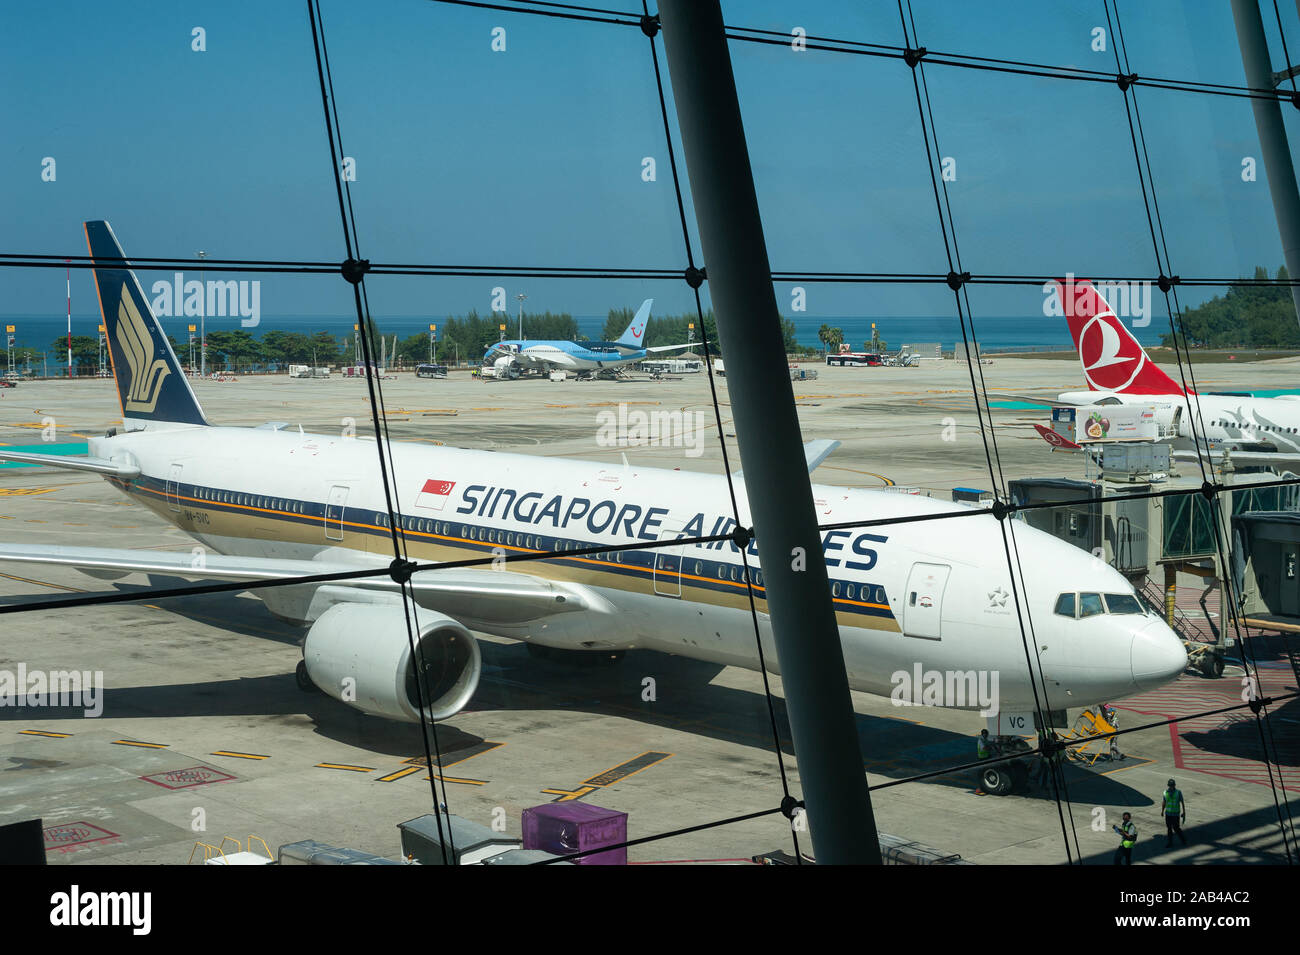 19.11.2019, Phuket, Thailand, Asien - Singapore Airlines Boeing 777-200ER Passagier Flugzeug am internationalen Flughafen in Phuket. Stockfoto